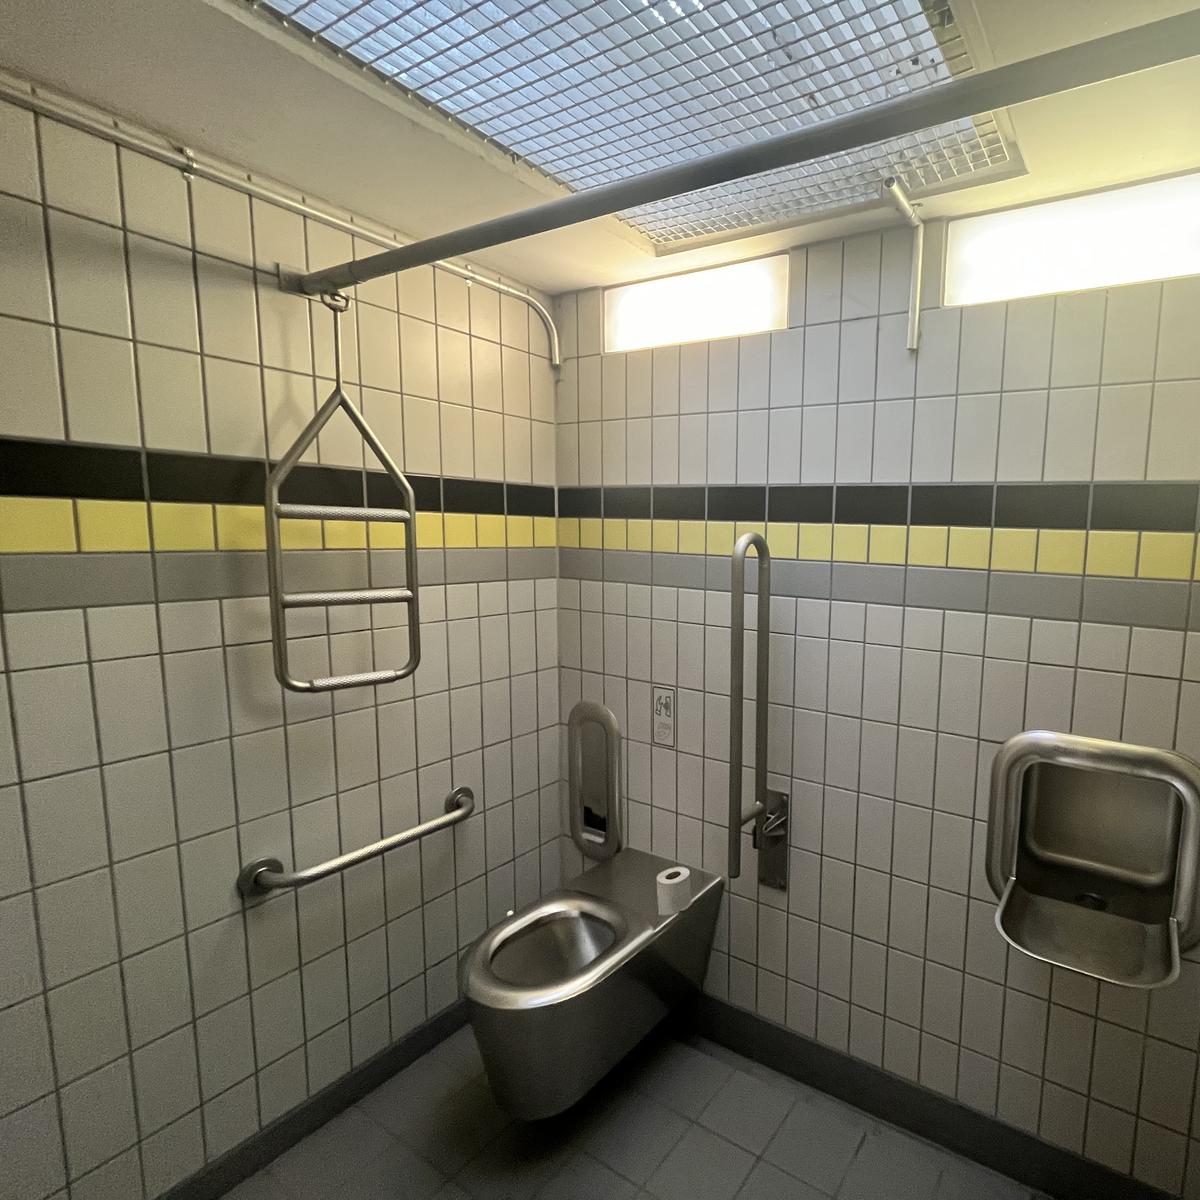 Die öffentlichen Toiletten von Bad Kreuznach im Check